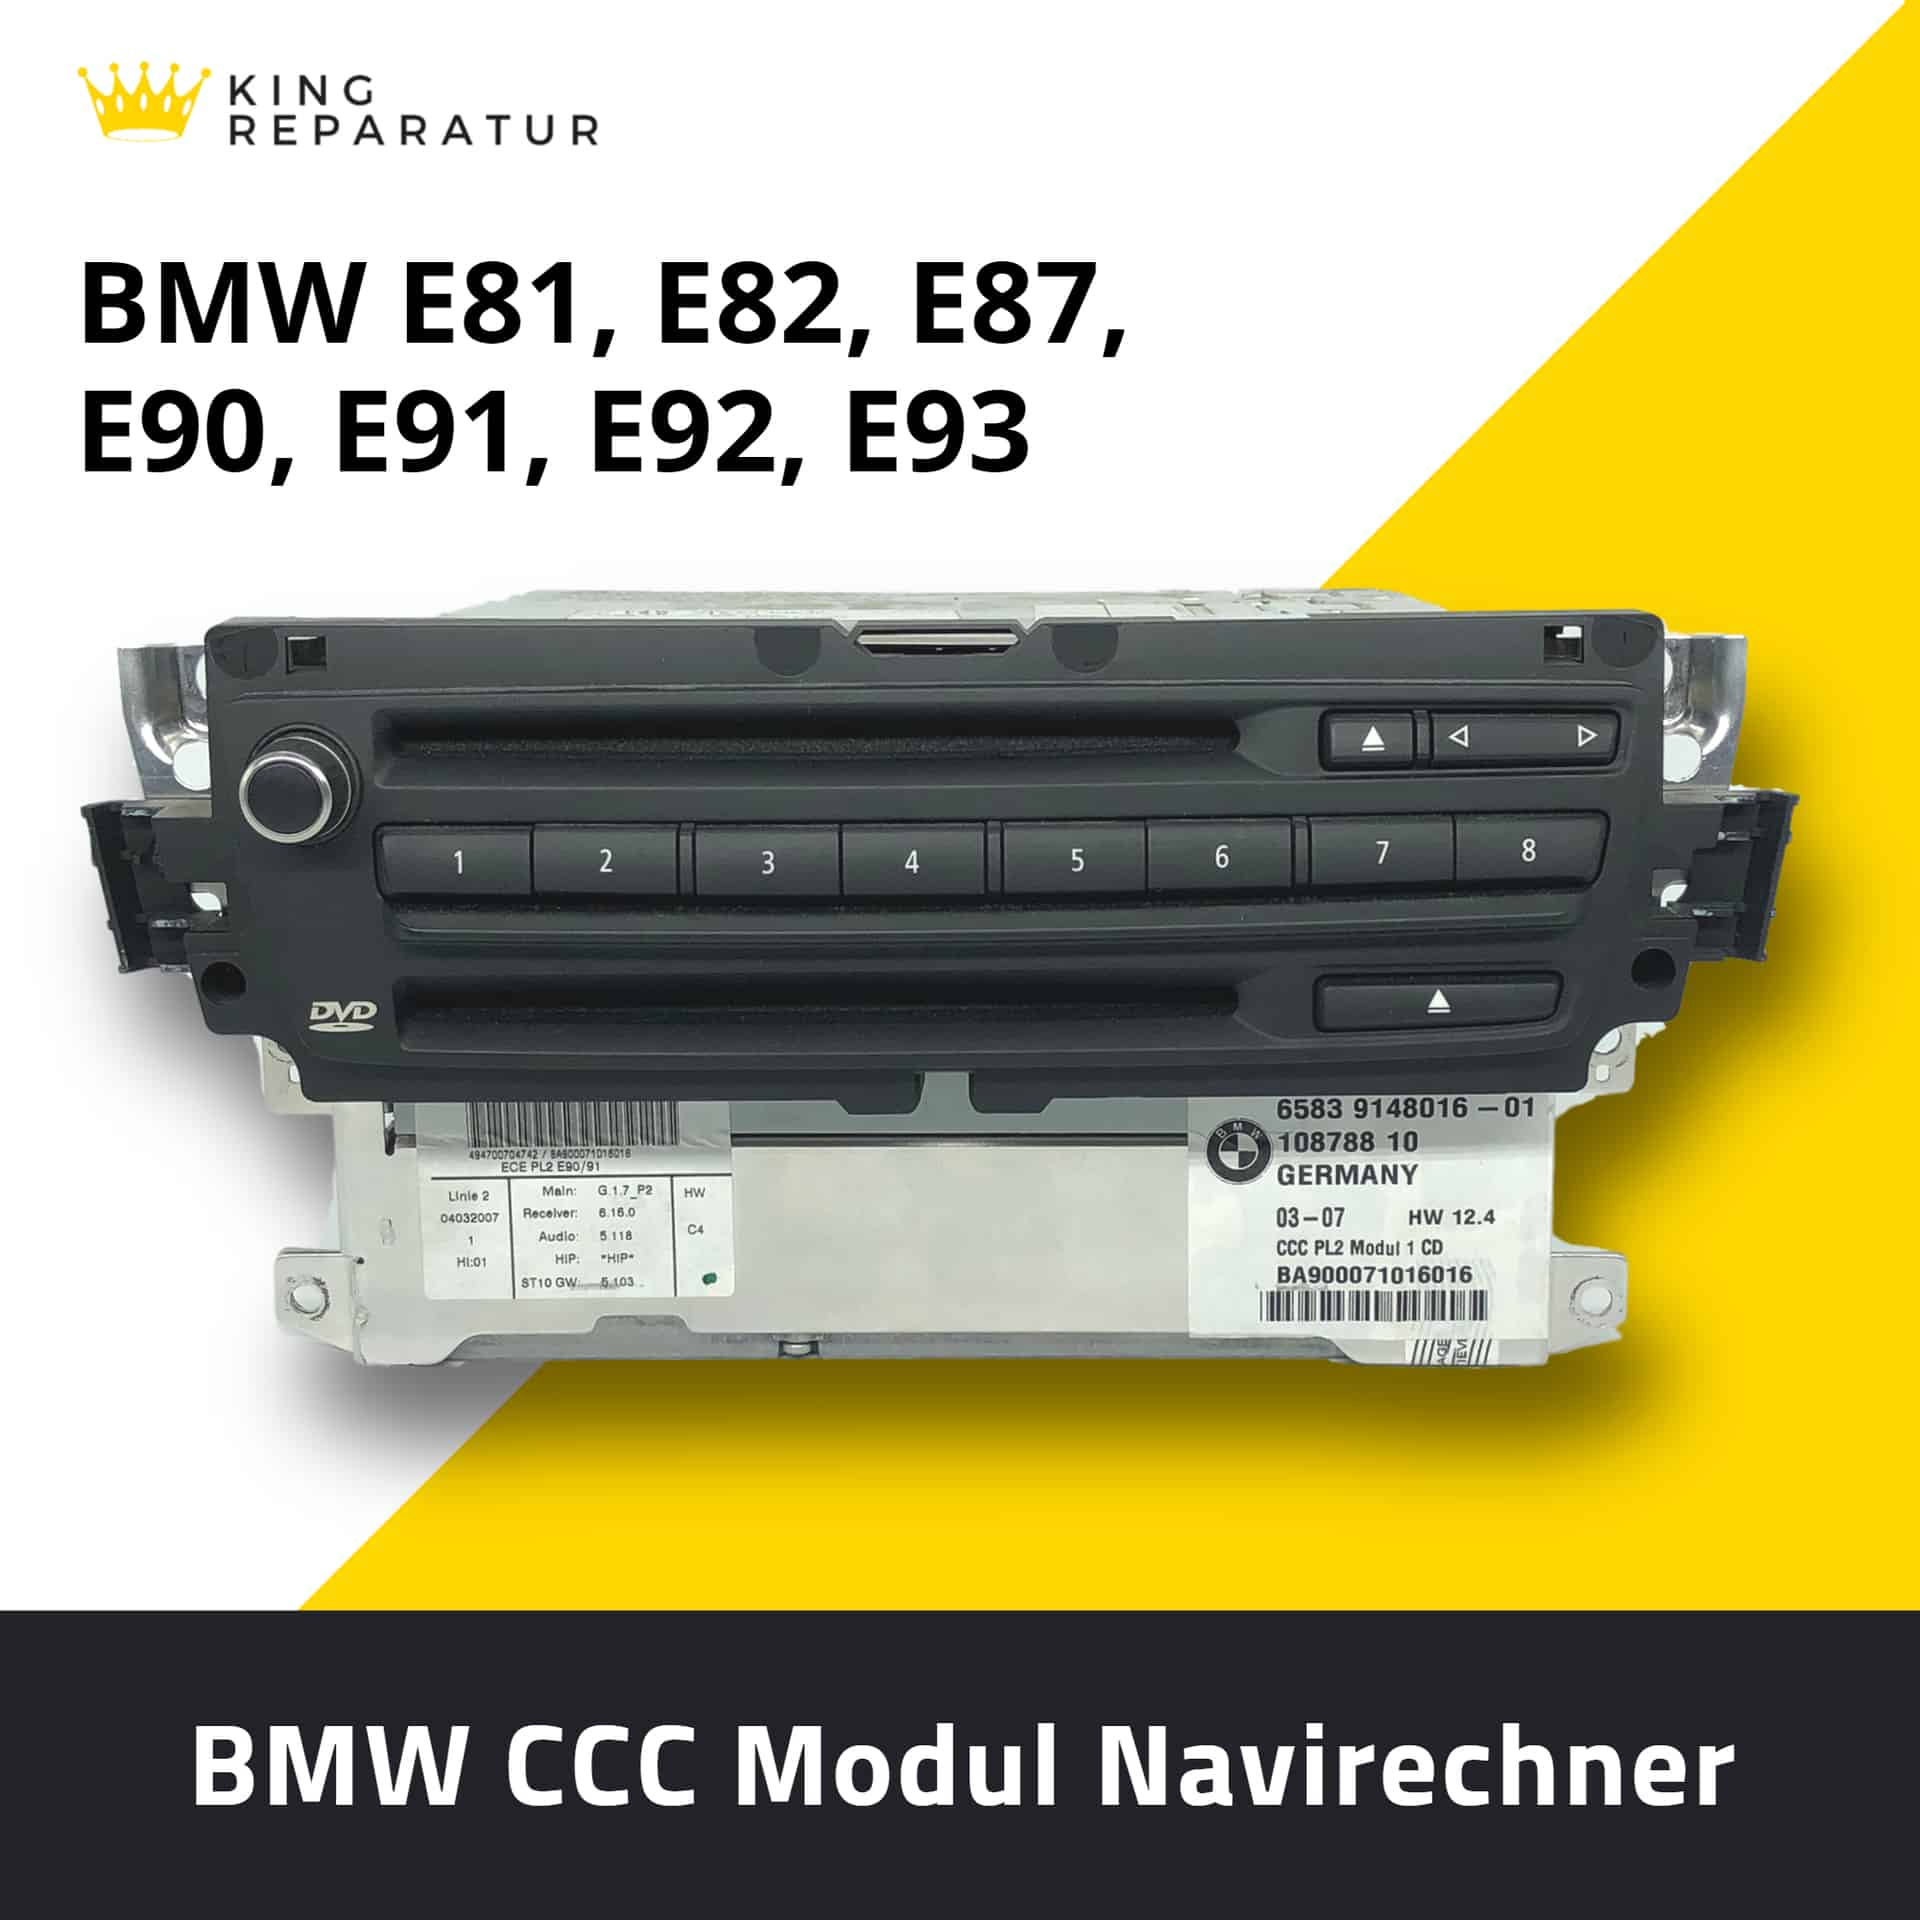 BMW CCC Reparatur Navi E60 E61 E90 E91 E92 E70 E87 E63 auch LCI bei Defekt 